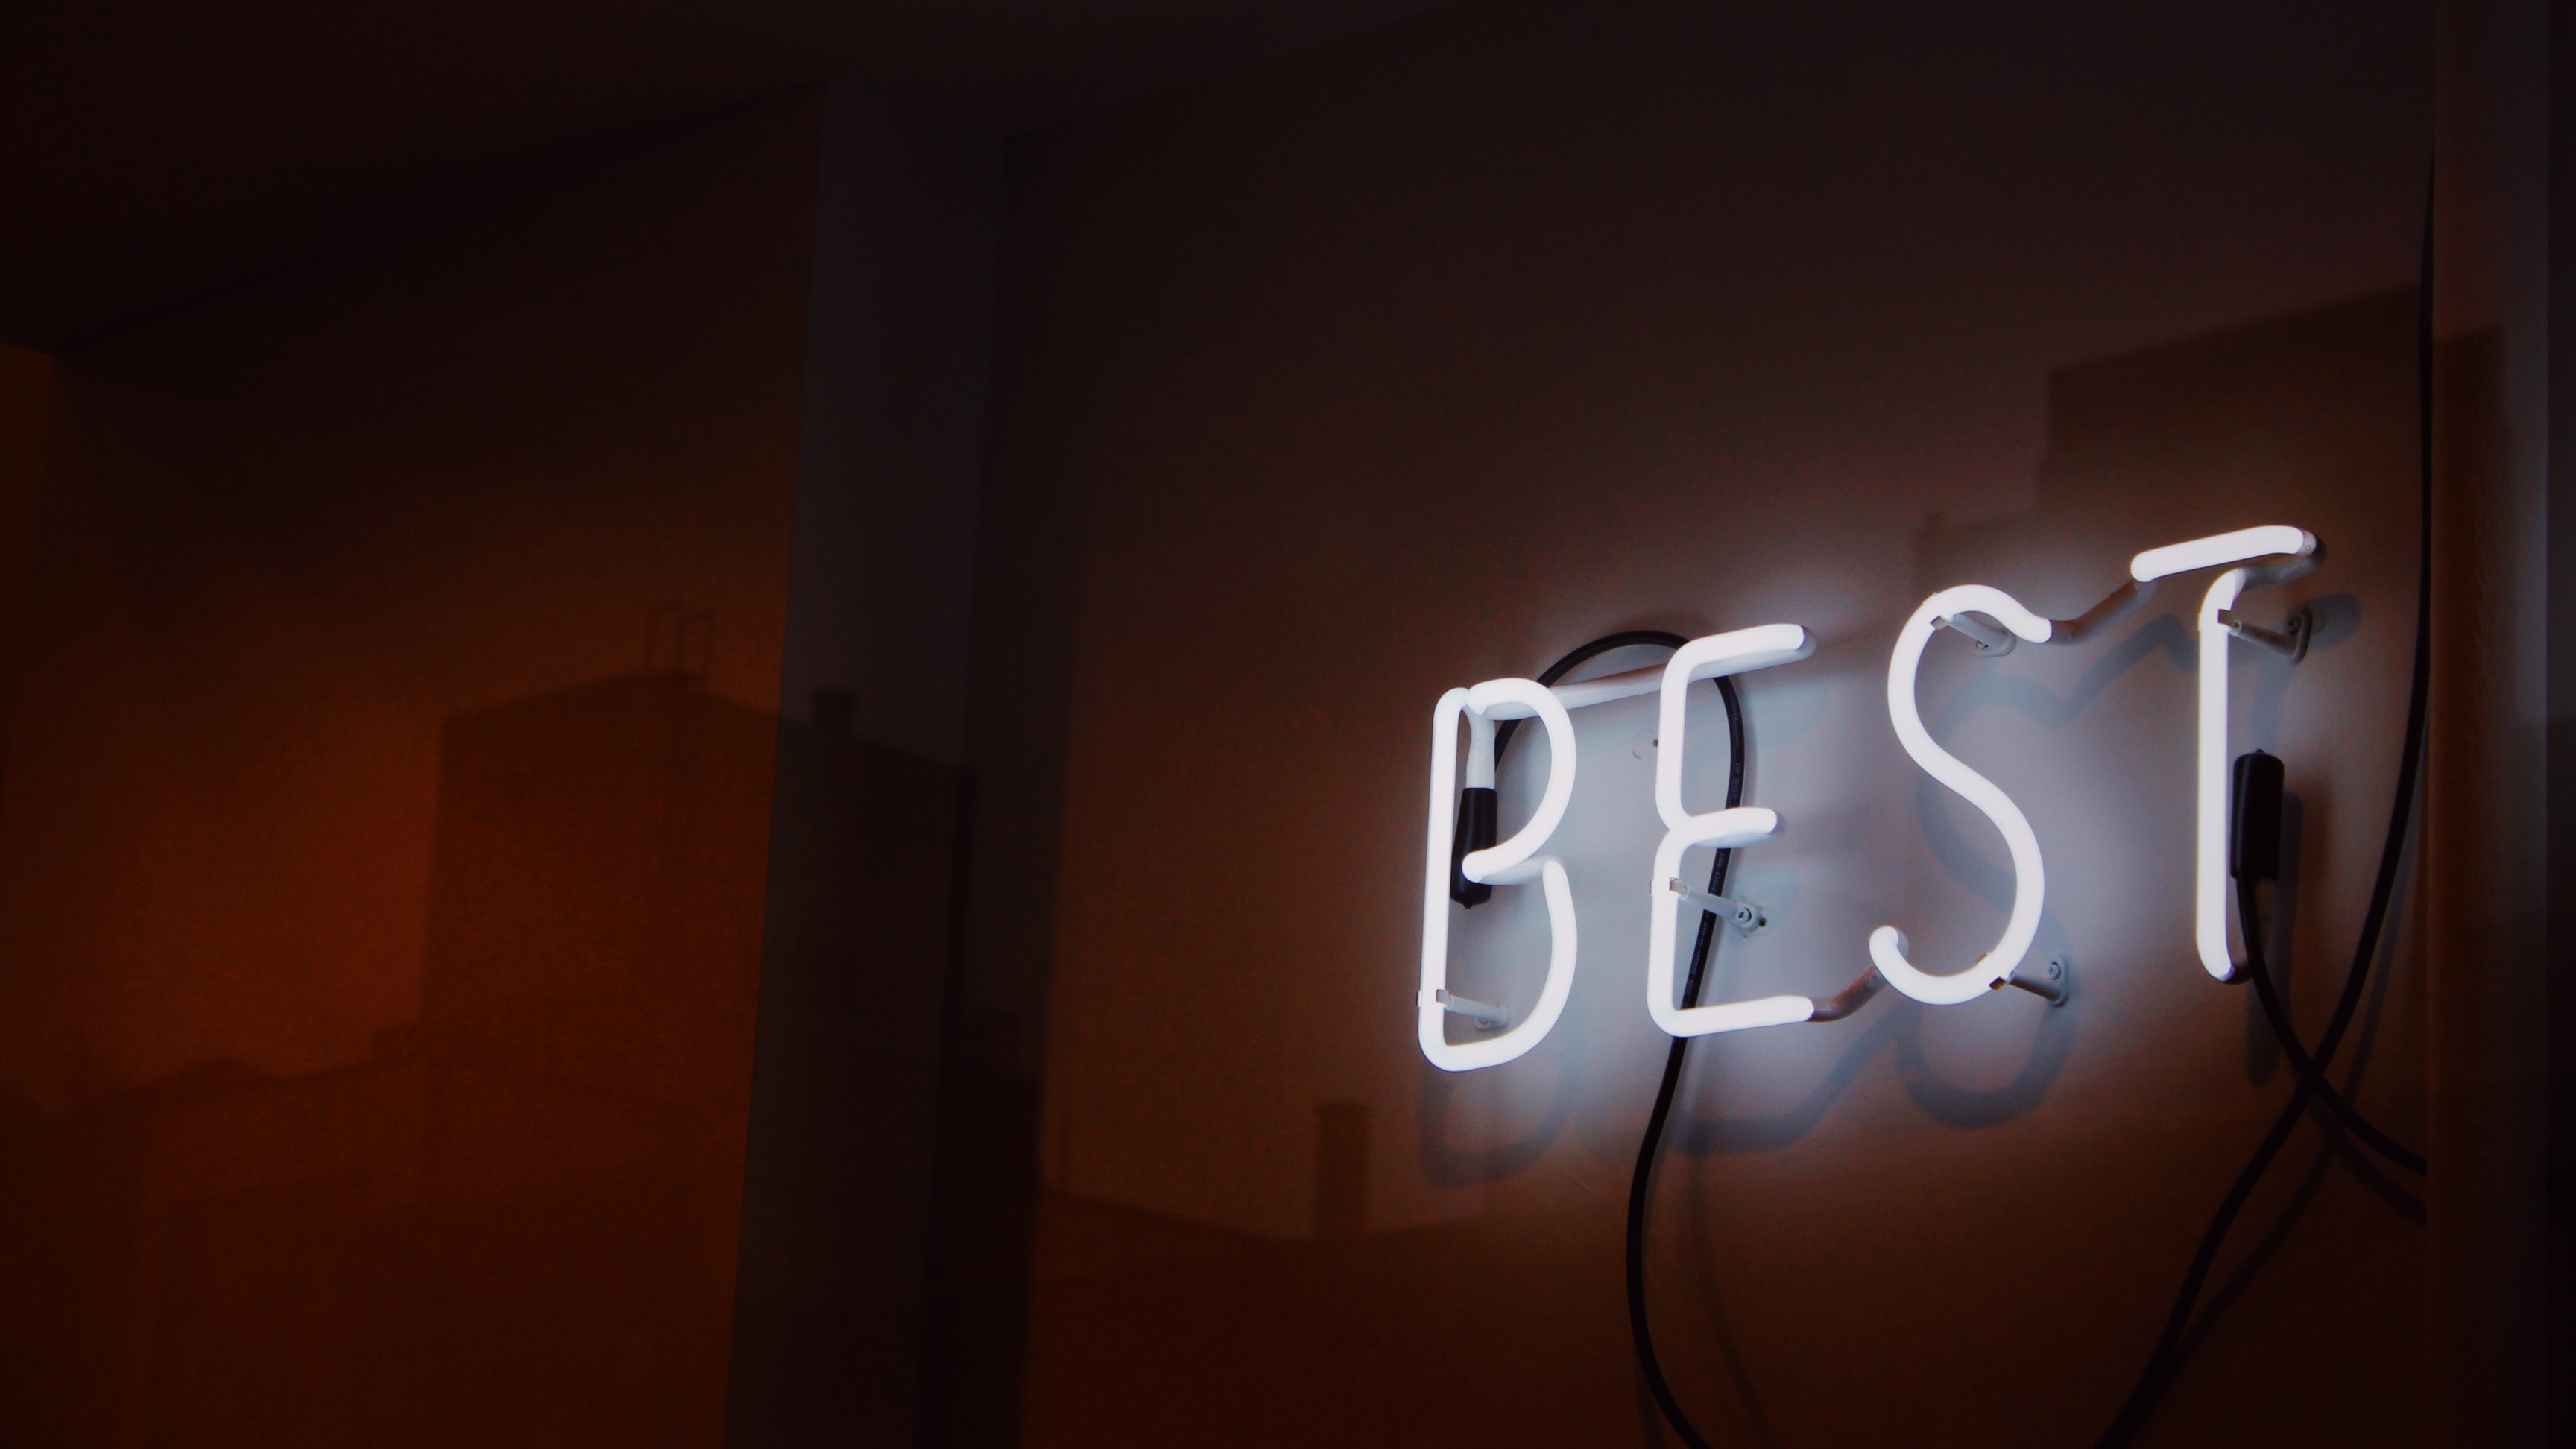 BEST LED SIGN - Photo by Jon Tyson (https://unsplash.com/@jontyson) on Unsplash